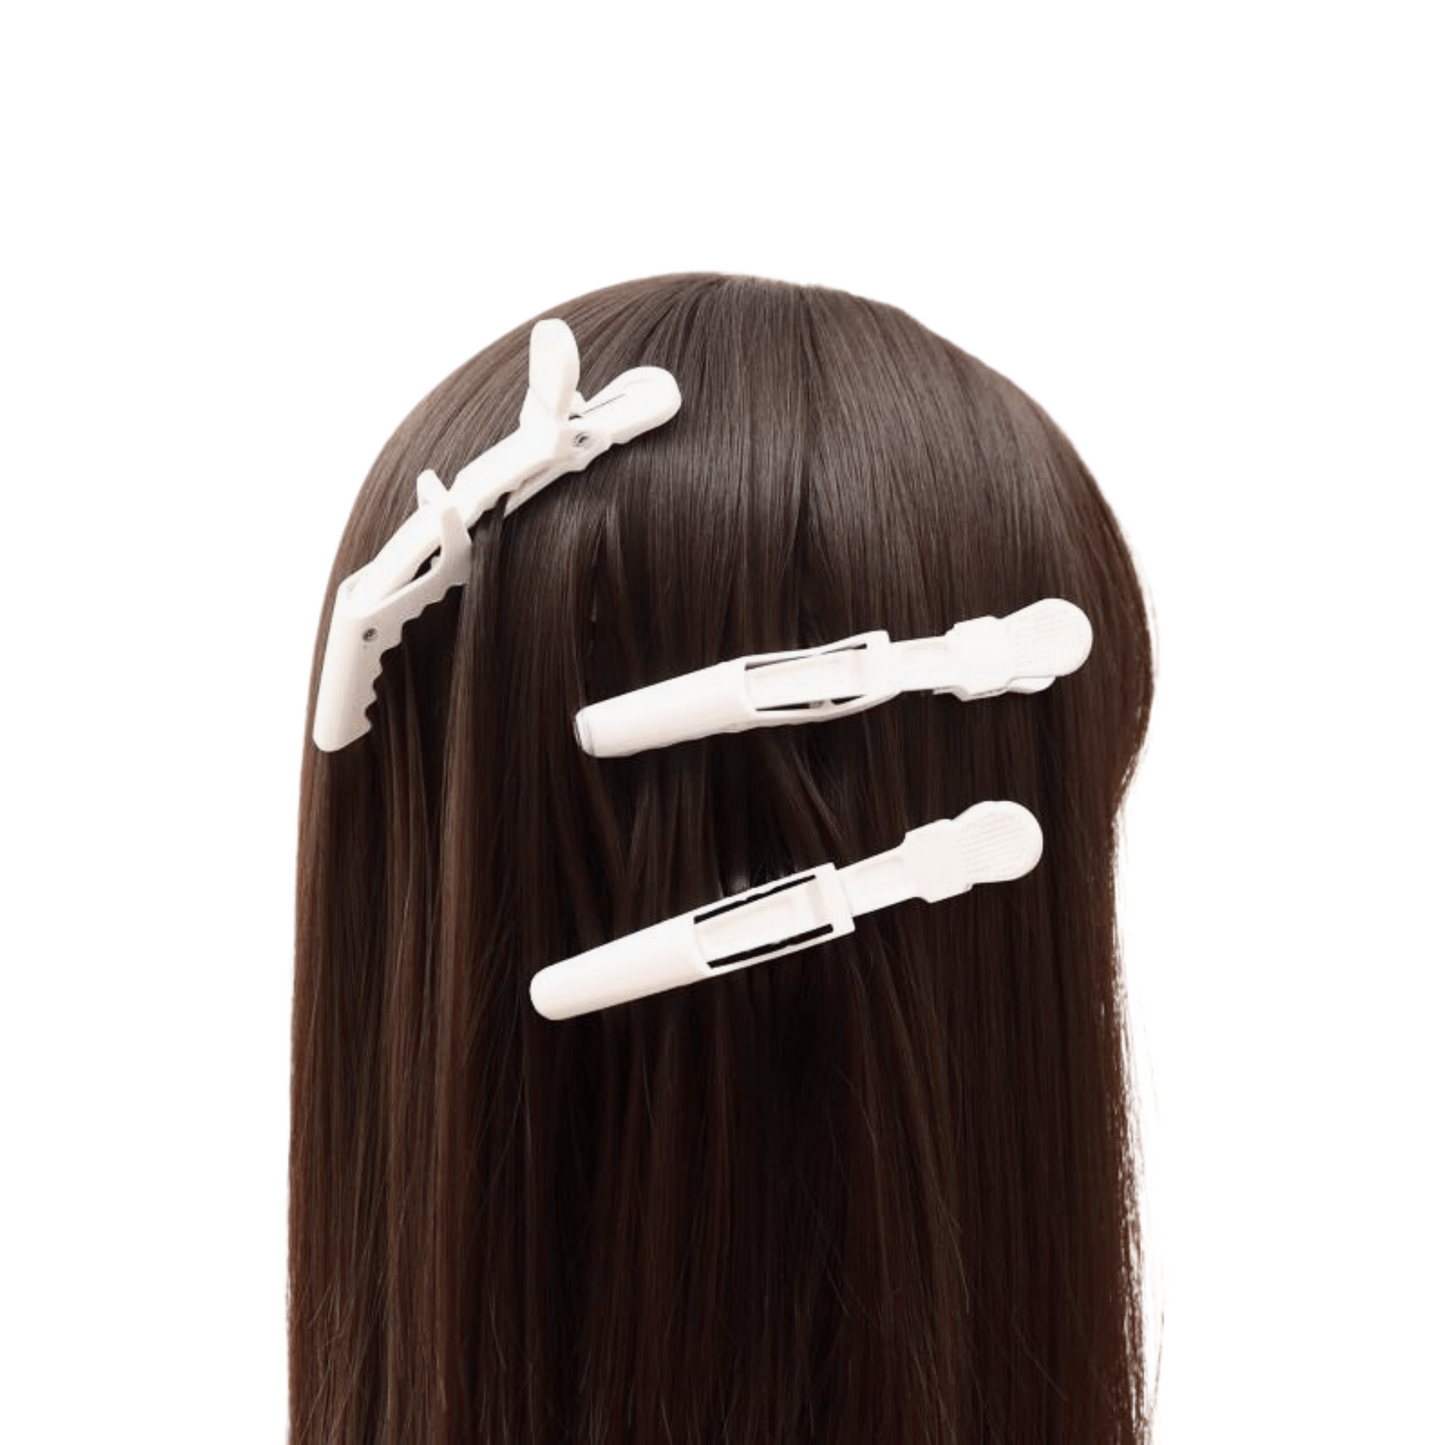 Seamless Hair Clips - 3pcs -